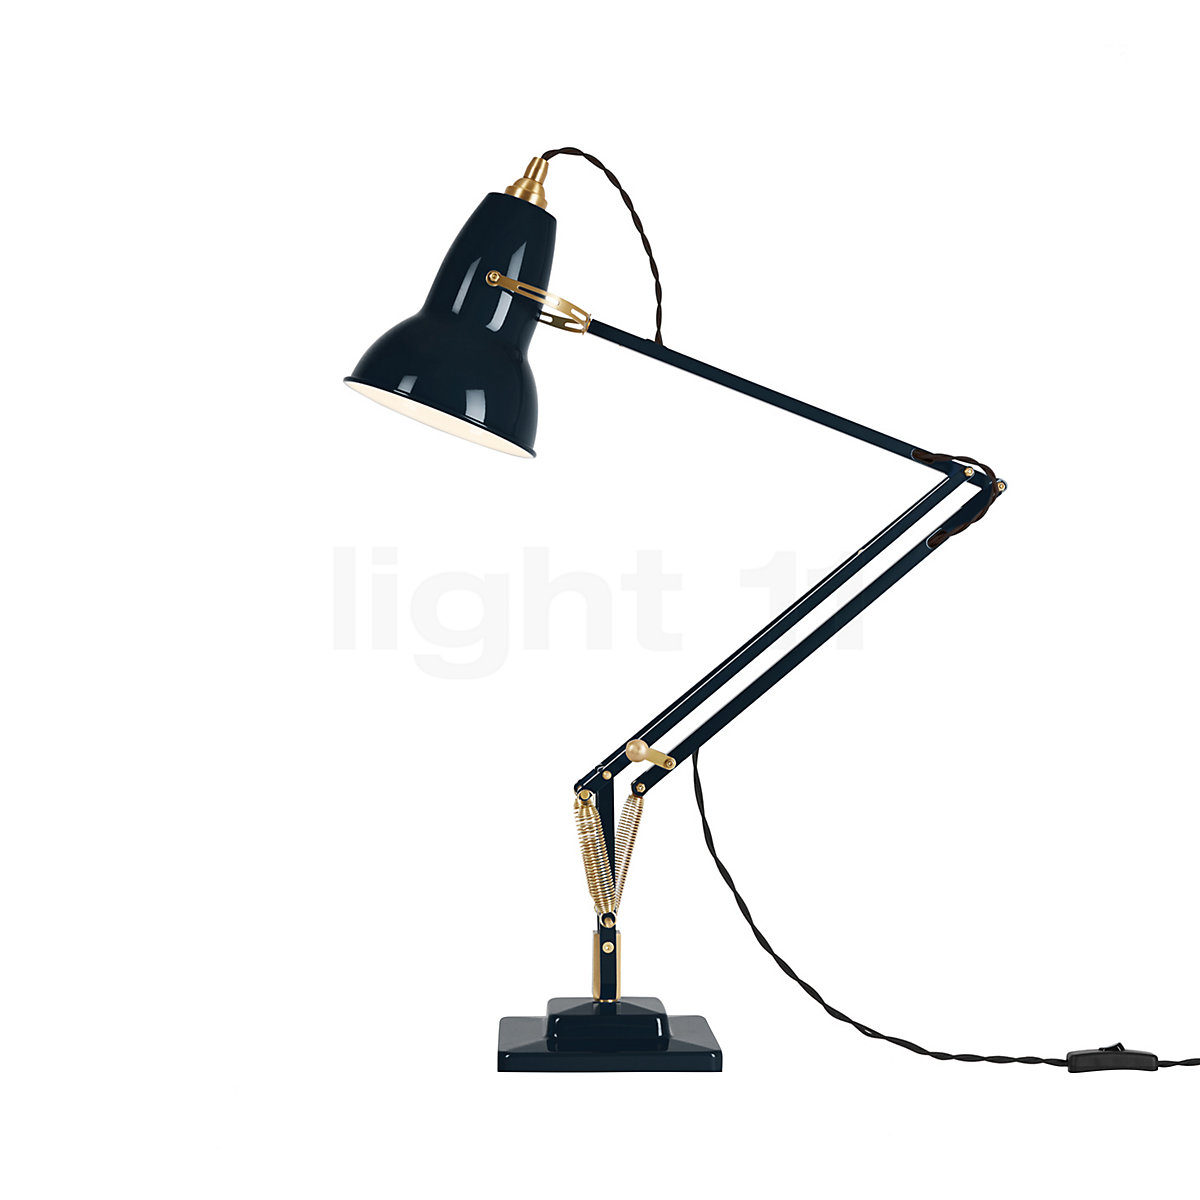 VENDU - Lampe de bureau vintage articulée orange - belOpus